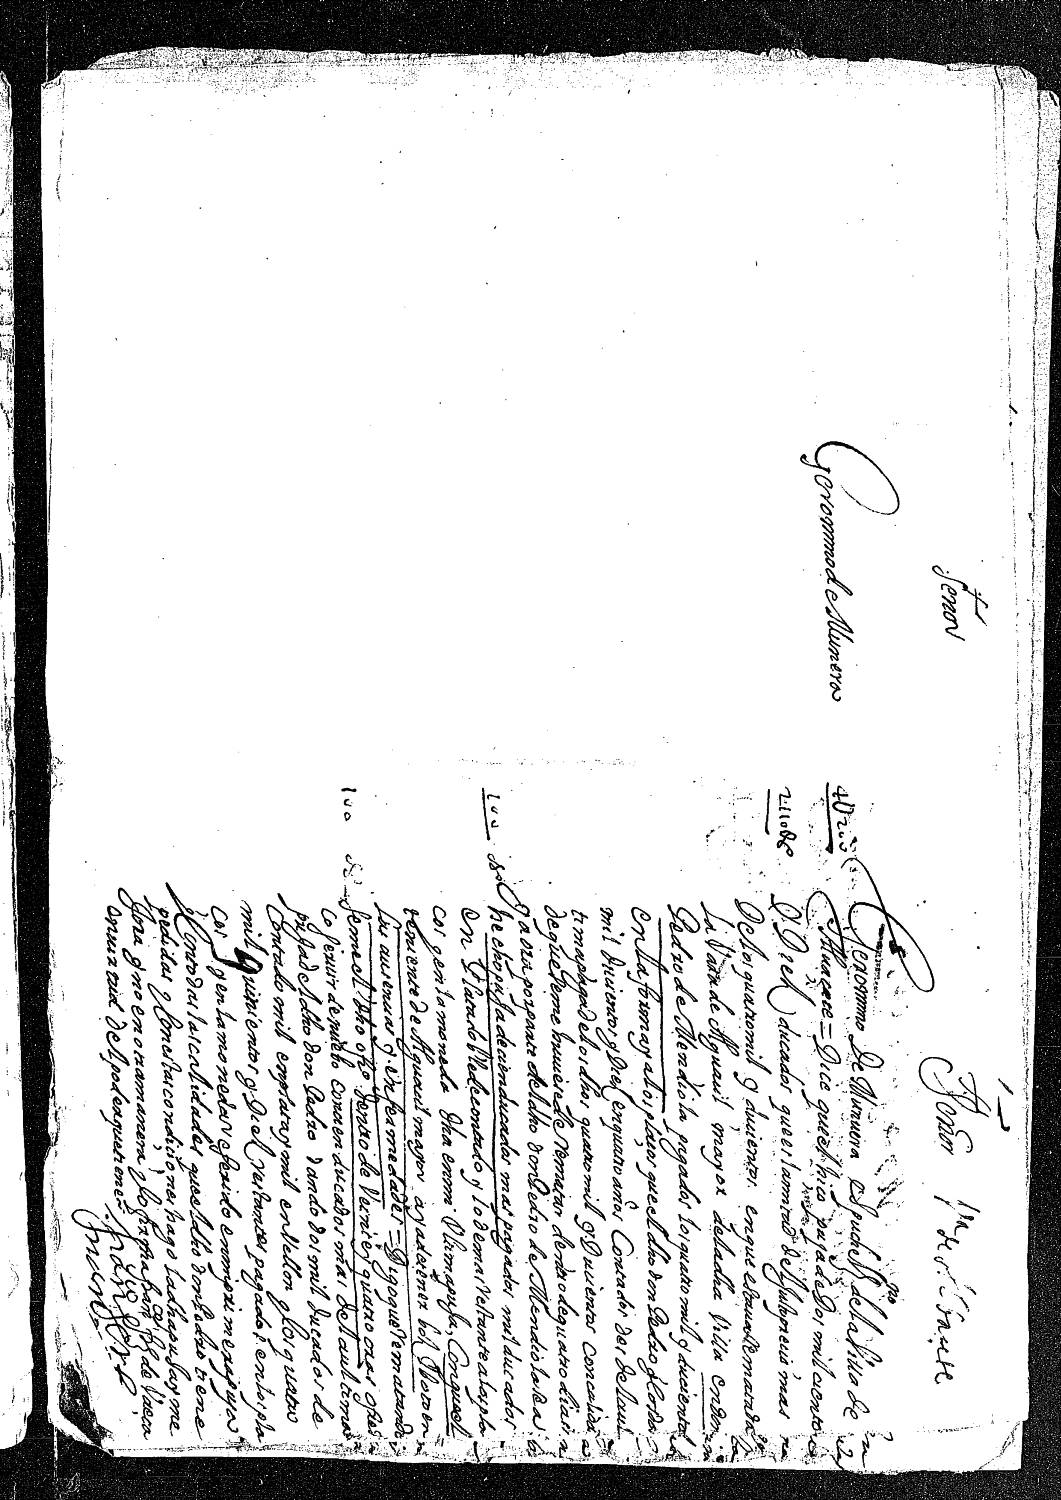 Petición de Jerónimo Munera Espuche, vecino de Albacete, solicitando al Rey 24 horas para aumentar la puja por la vara de alguacil mayor de esta villa.